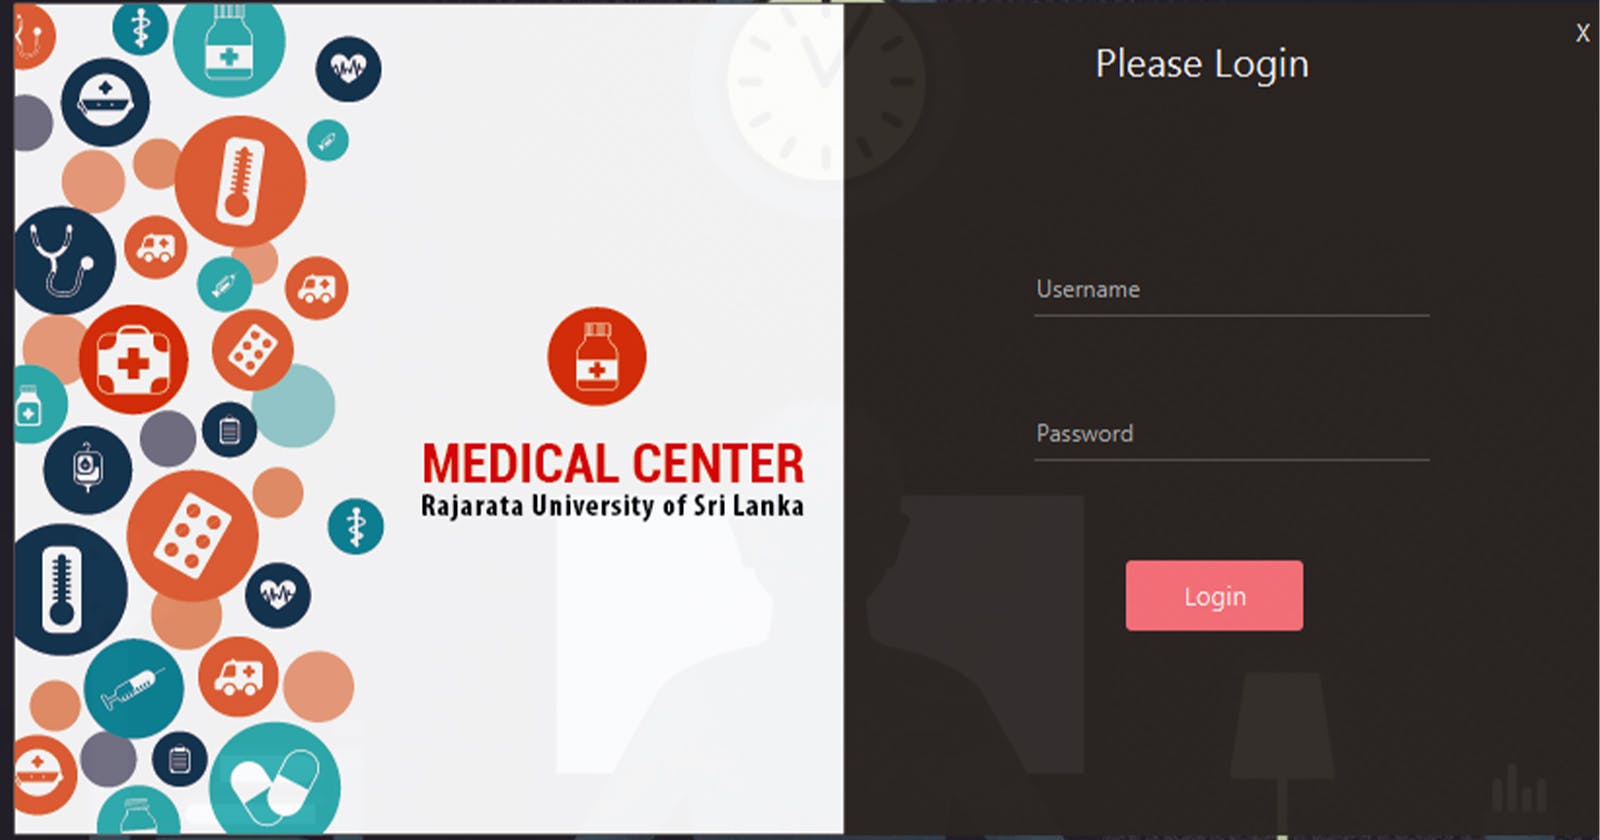 University Medical Center Management System